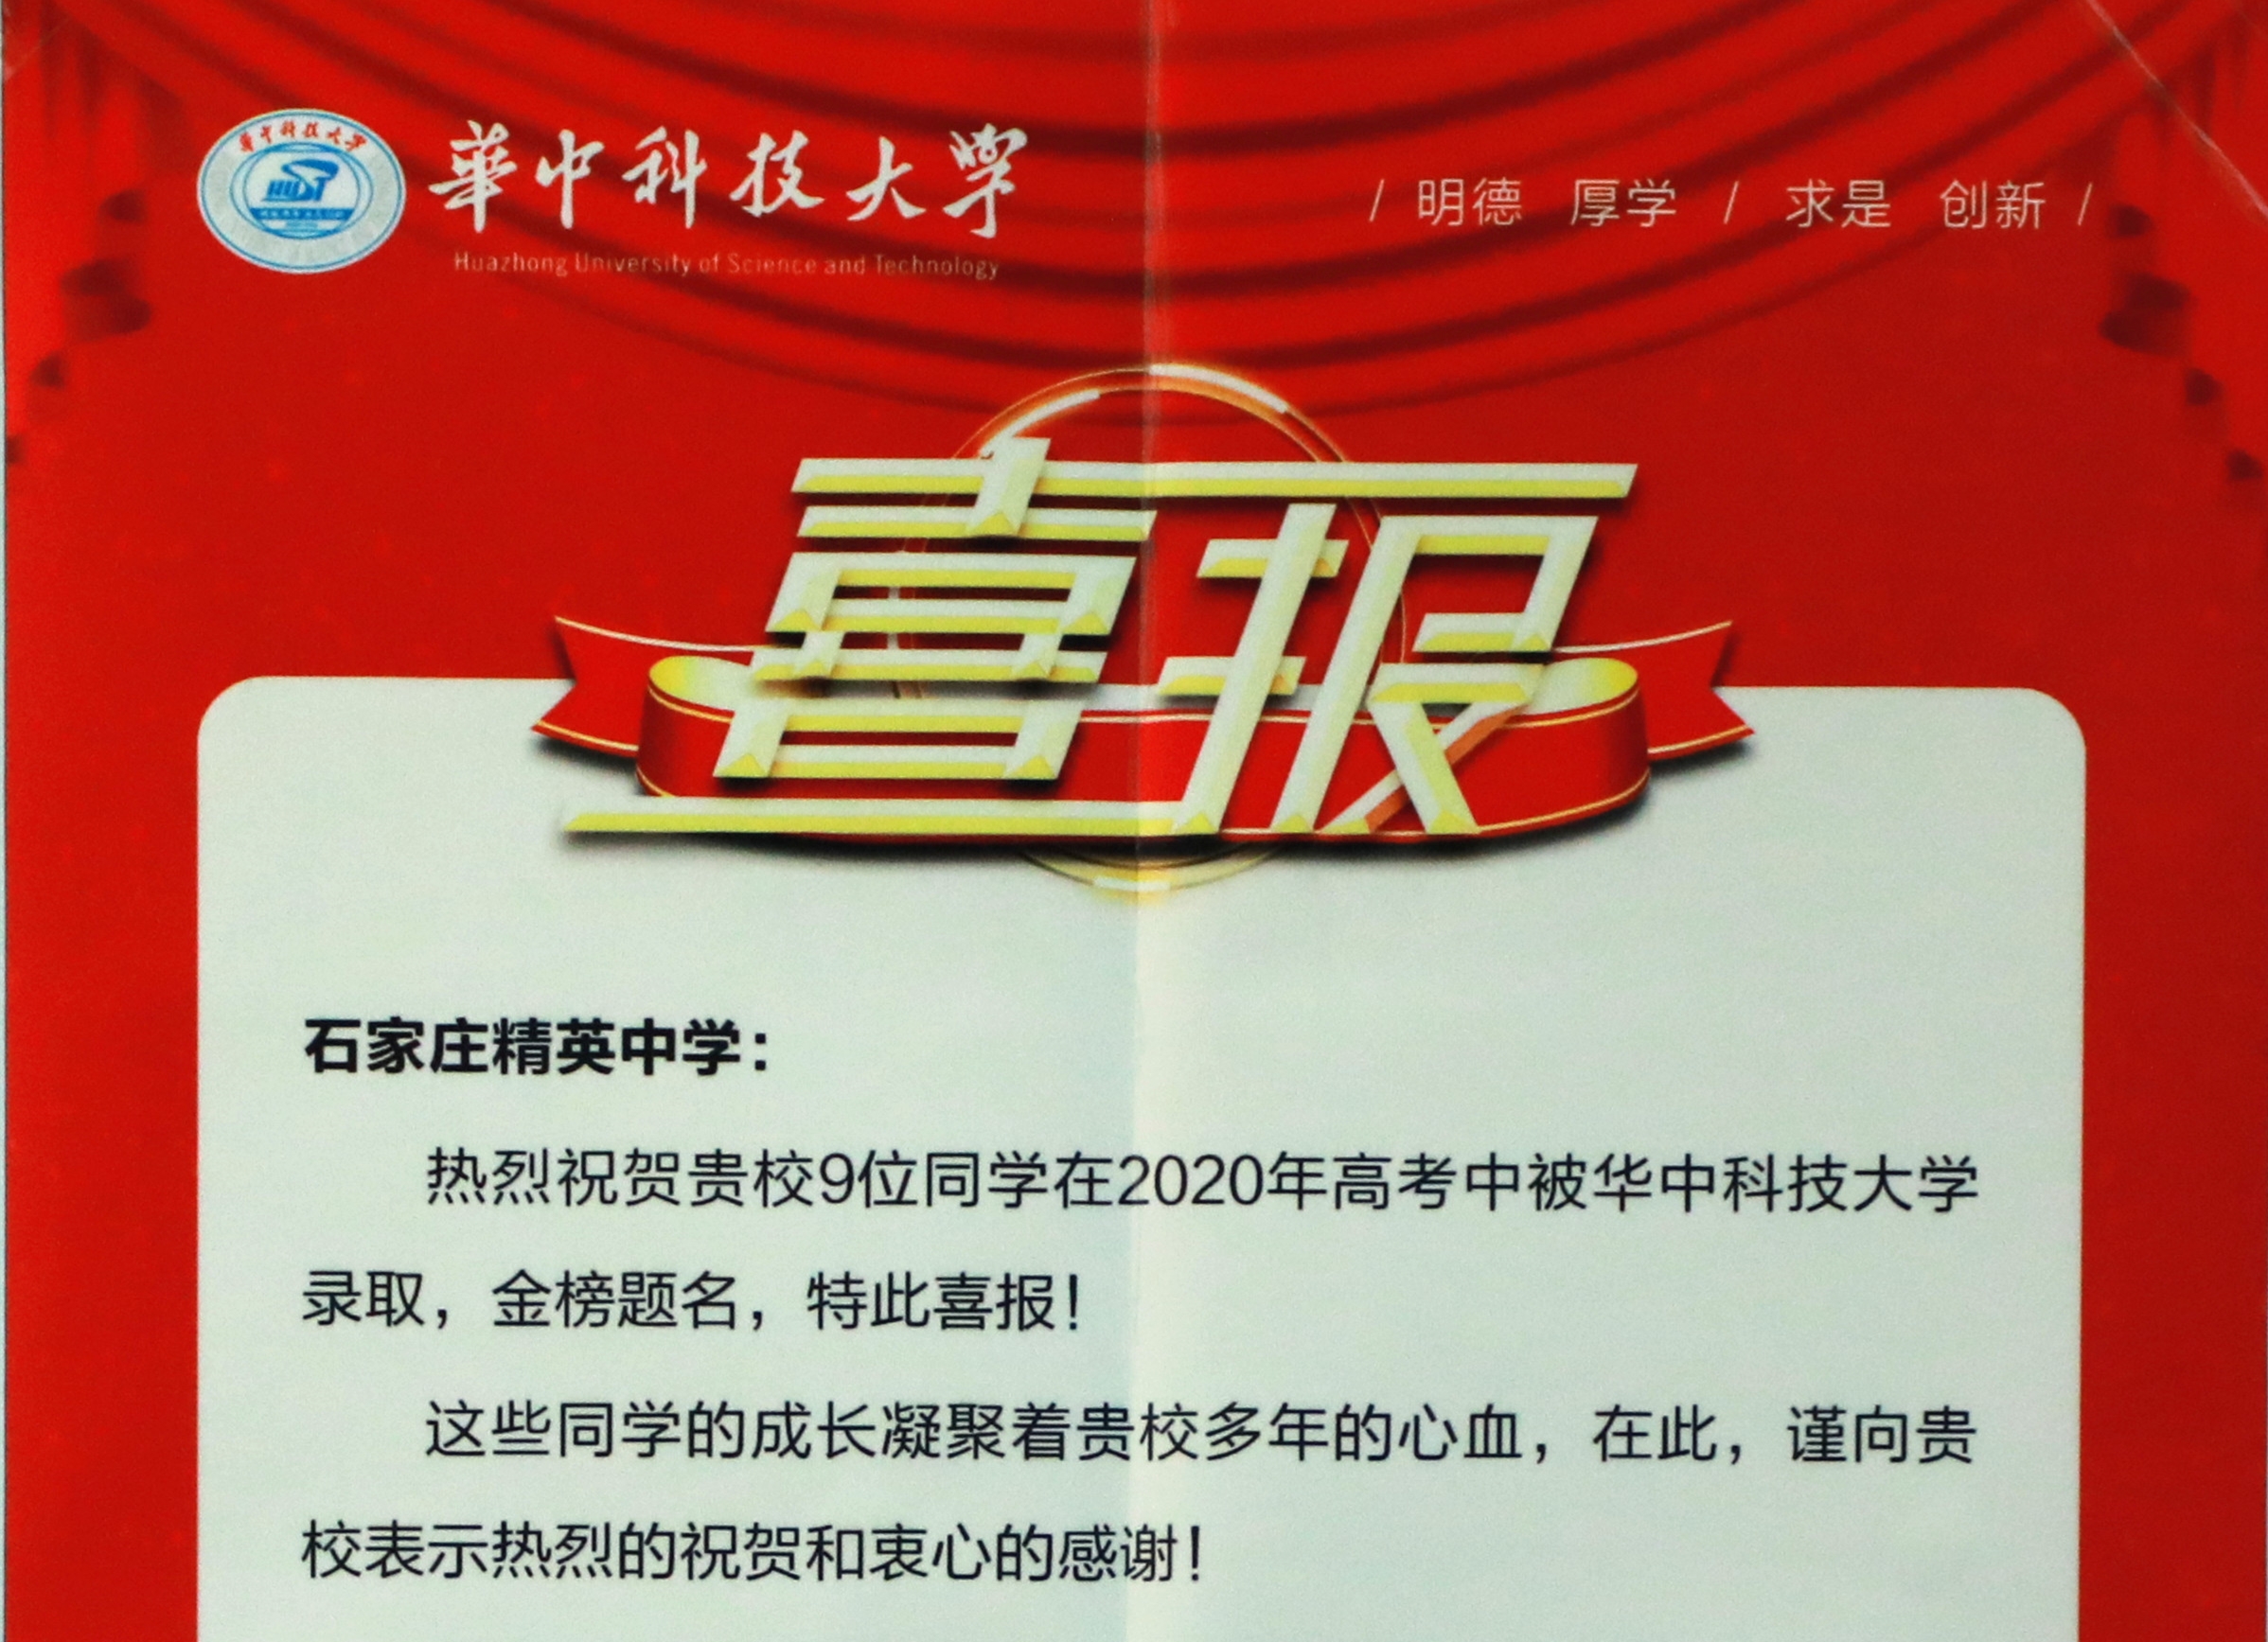 华中科技大学向带泛亚电竞网站发来喜报